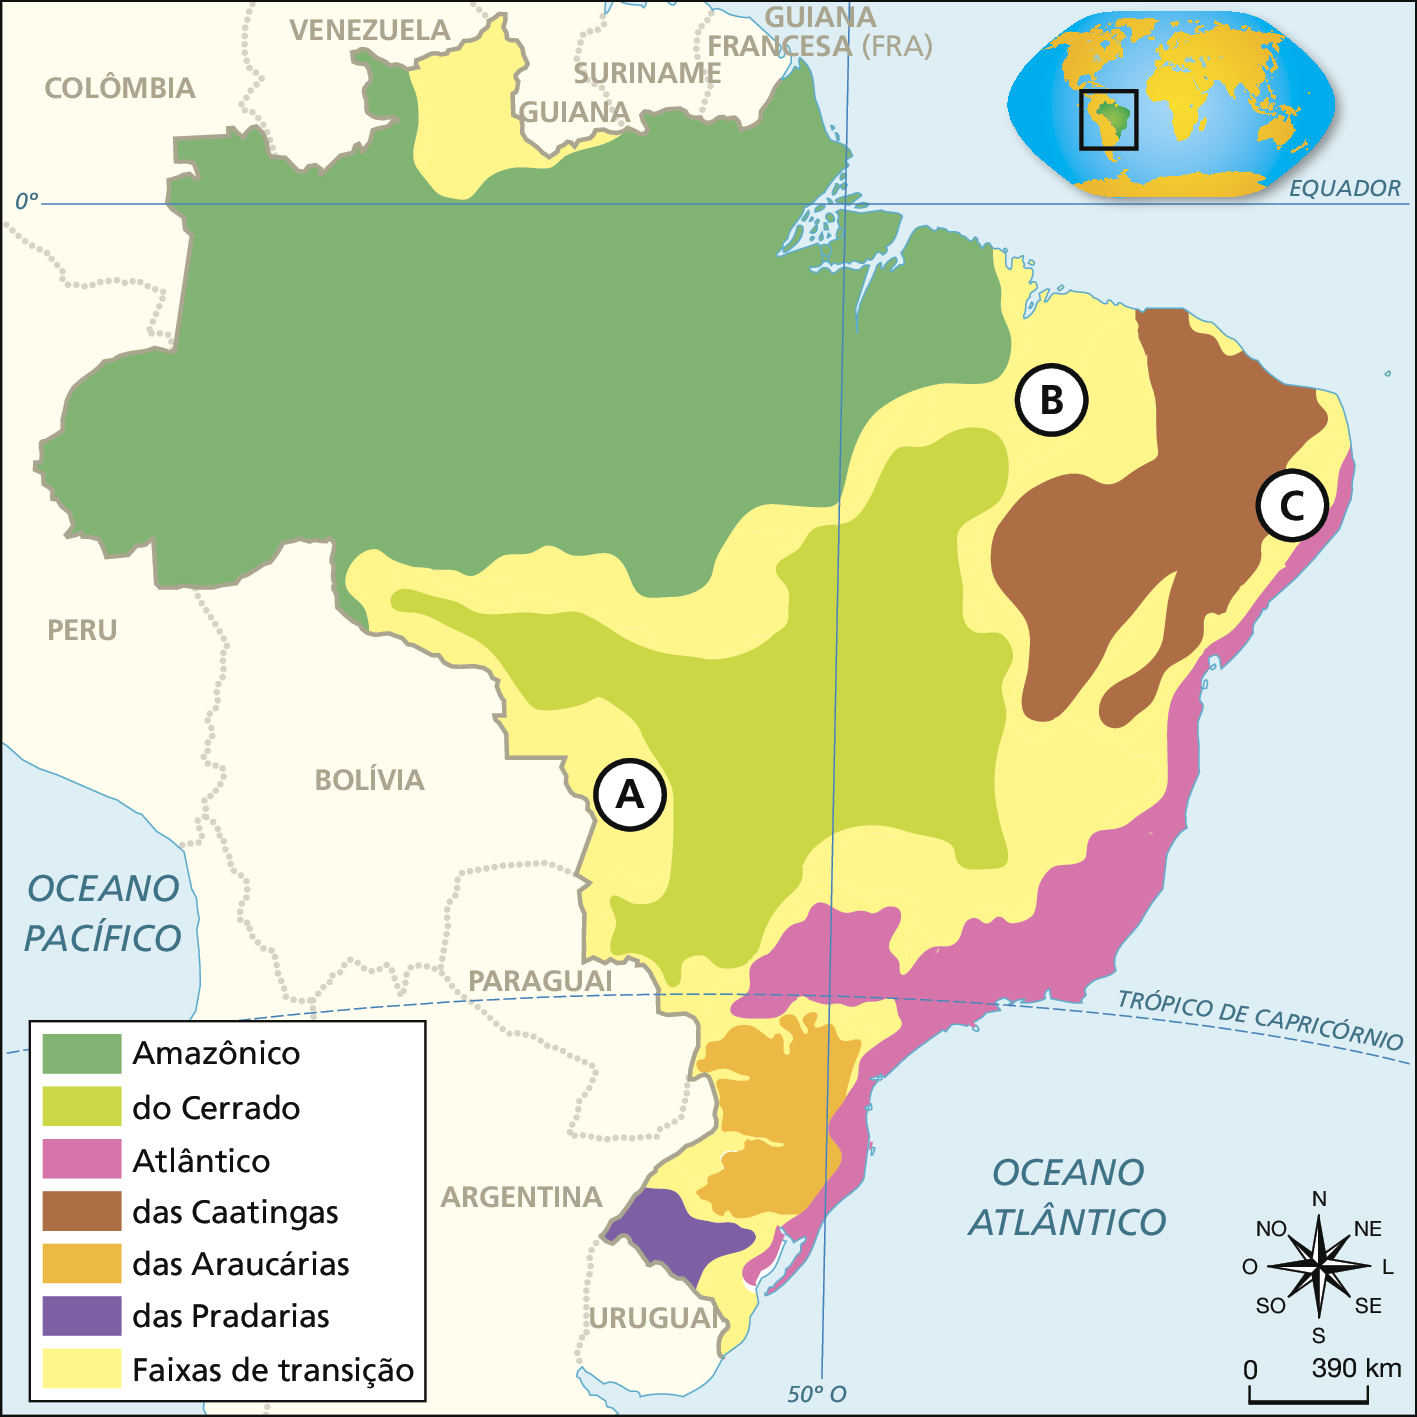 Mapa do Brasil com sete cores indicando a ocorrência de diferentes domínios morfoclimáticos. Na região Norte, grande extensão de verde escuro, indicando domínio Amazônico. Na região Centro-Oeste, grande extensão de verde claro, indicando Cerrado. Na região Sudeste e por todo o litoral leste do país, a cor rosa indica o domínio Atlântico. No interior do Nordeste há uma extensão marrom, indicando domínio das Caatingas. No interior do Sul há a cor laranja, indicando domínio das Araucárias. No extremo Sul a cor roxa indica o domínio das Pradarias. Contornando o Cerrado e a Caatinga há regiões amarelas que indicam faixas de transição. À leste do Cerrado a letra A indica Pantanal Mato-grossense. À noroeste da Caatinga, a letra B indica Mata dos Cocais. À leste da Caatinga a letra C indica Agreste. No canto superior direito, planisfério destacando a localização do Brasil. No canto inferior direito, rosa dos ventos e escala de 0 a 390 quilômetros.